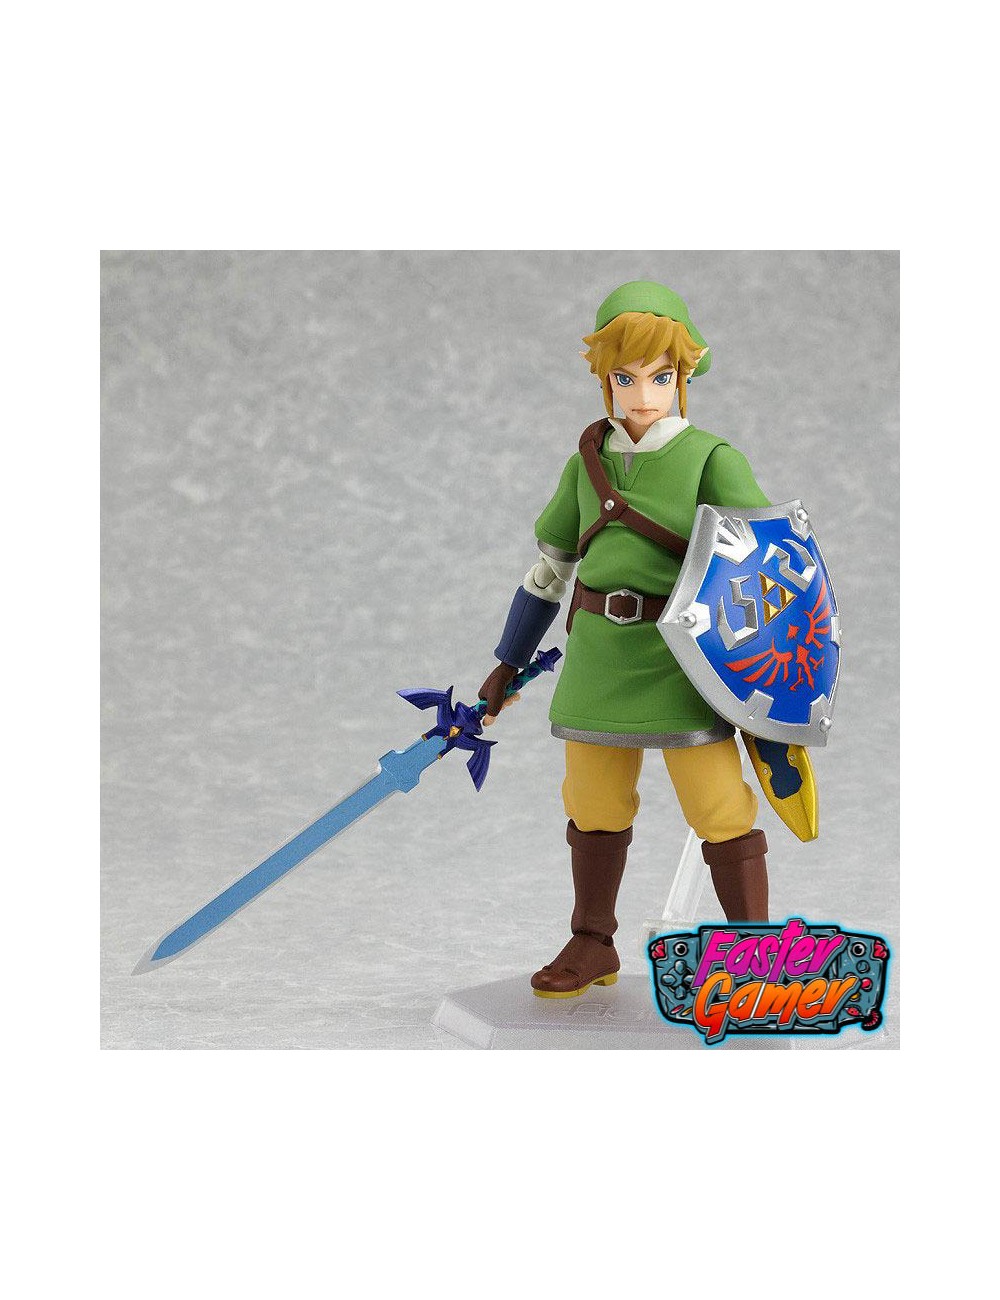  Good Smile The Legend of Zelda: Skyward Sword Link Figma Action  Figure : Toys & Games